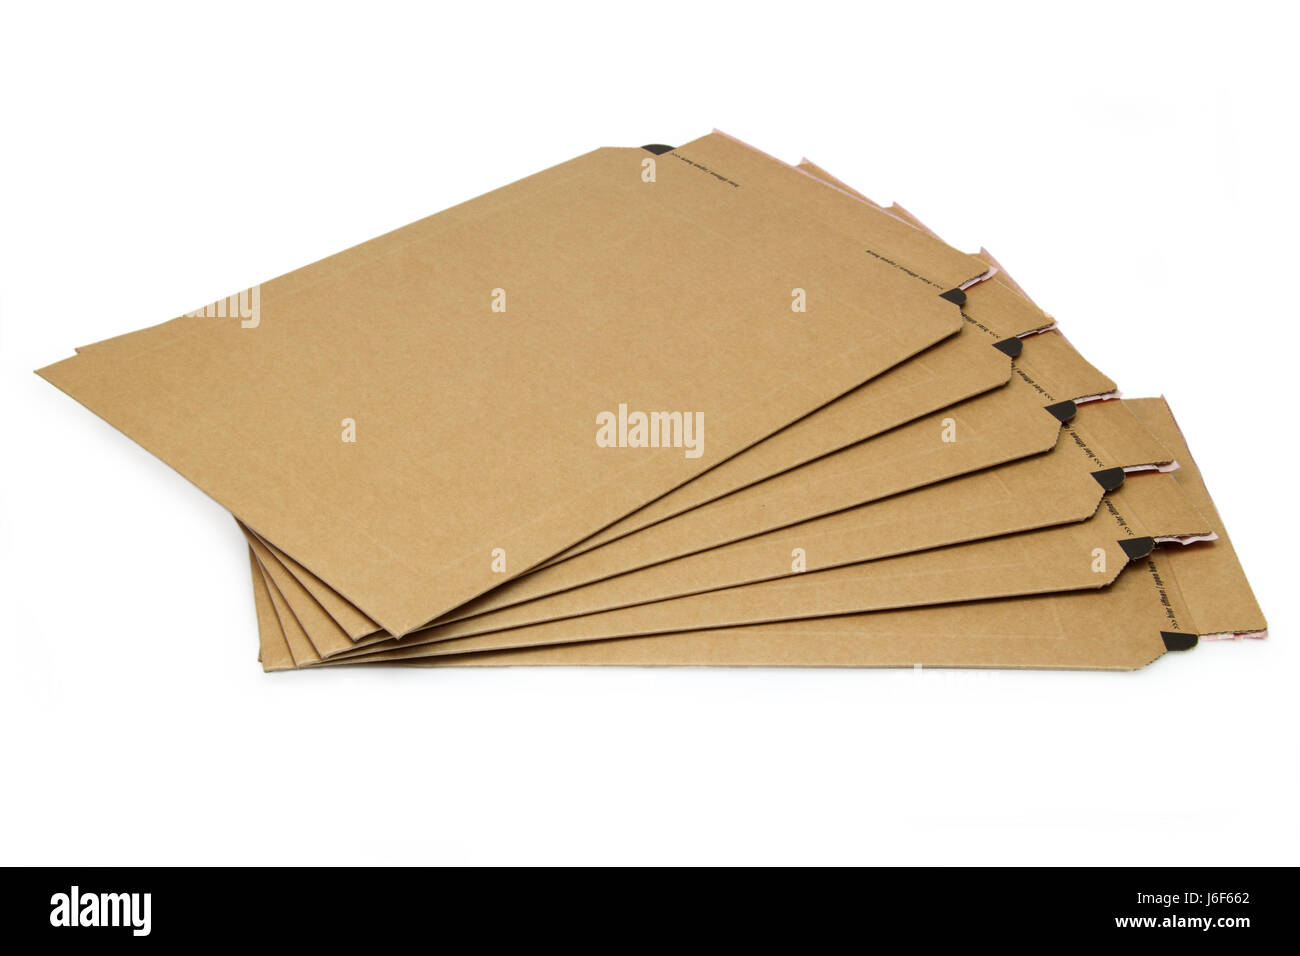 Matériel d'emballage en carton avec enveloppe poste stable pack de langue maternelle Banque D'Images